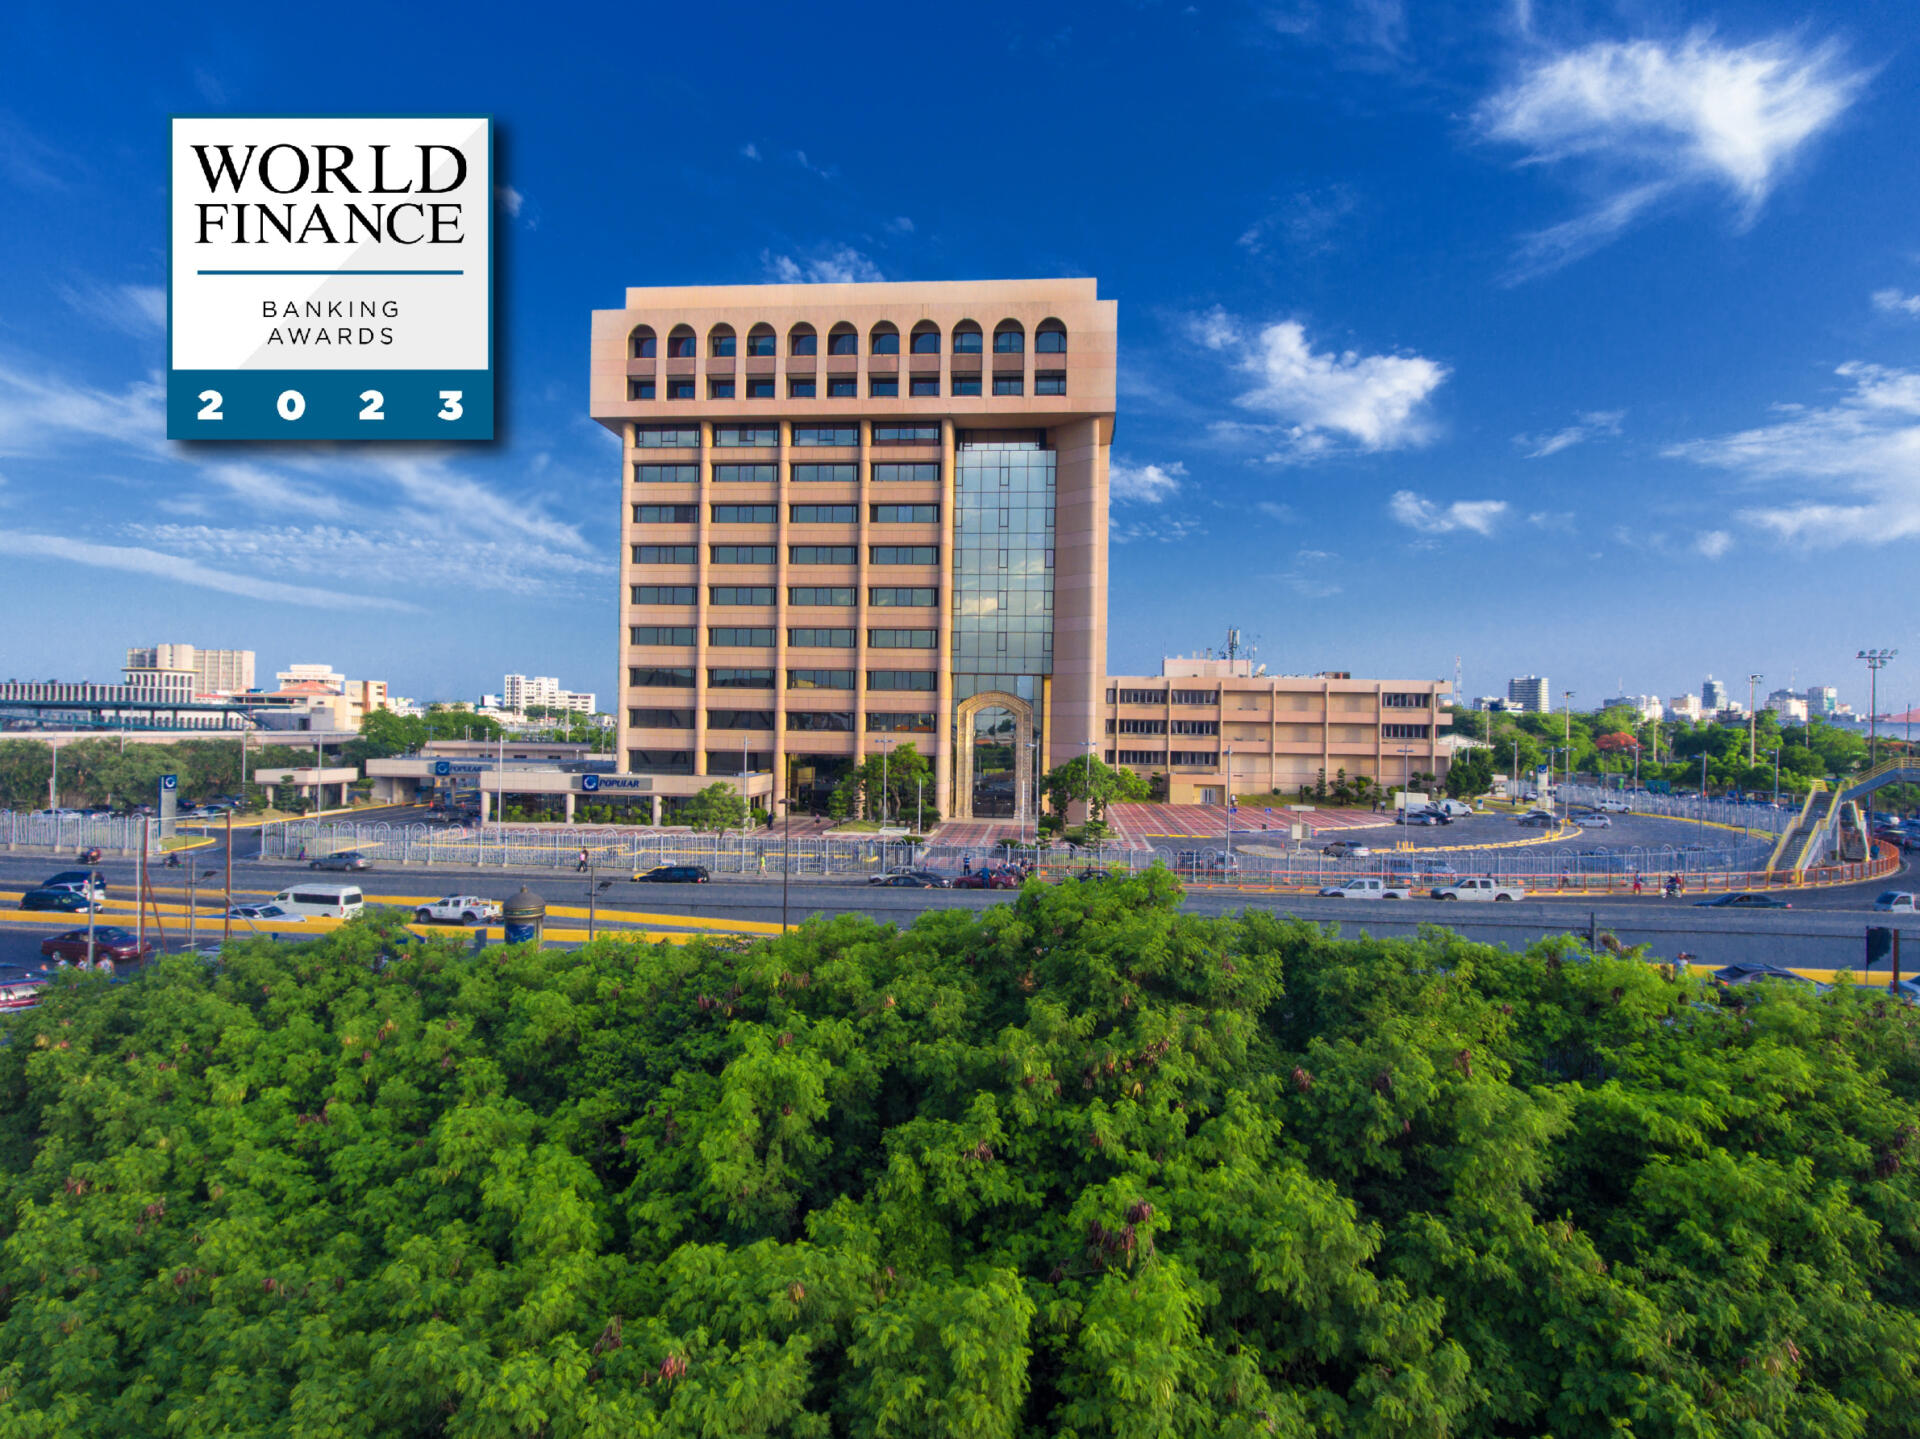 Banco Popular ha sido reconocido en varias ocasiones por revista financiera World Finance,